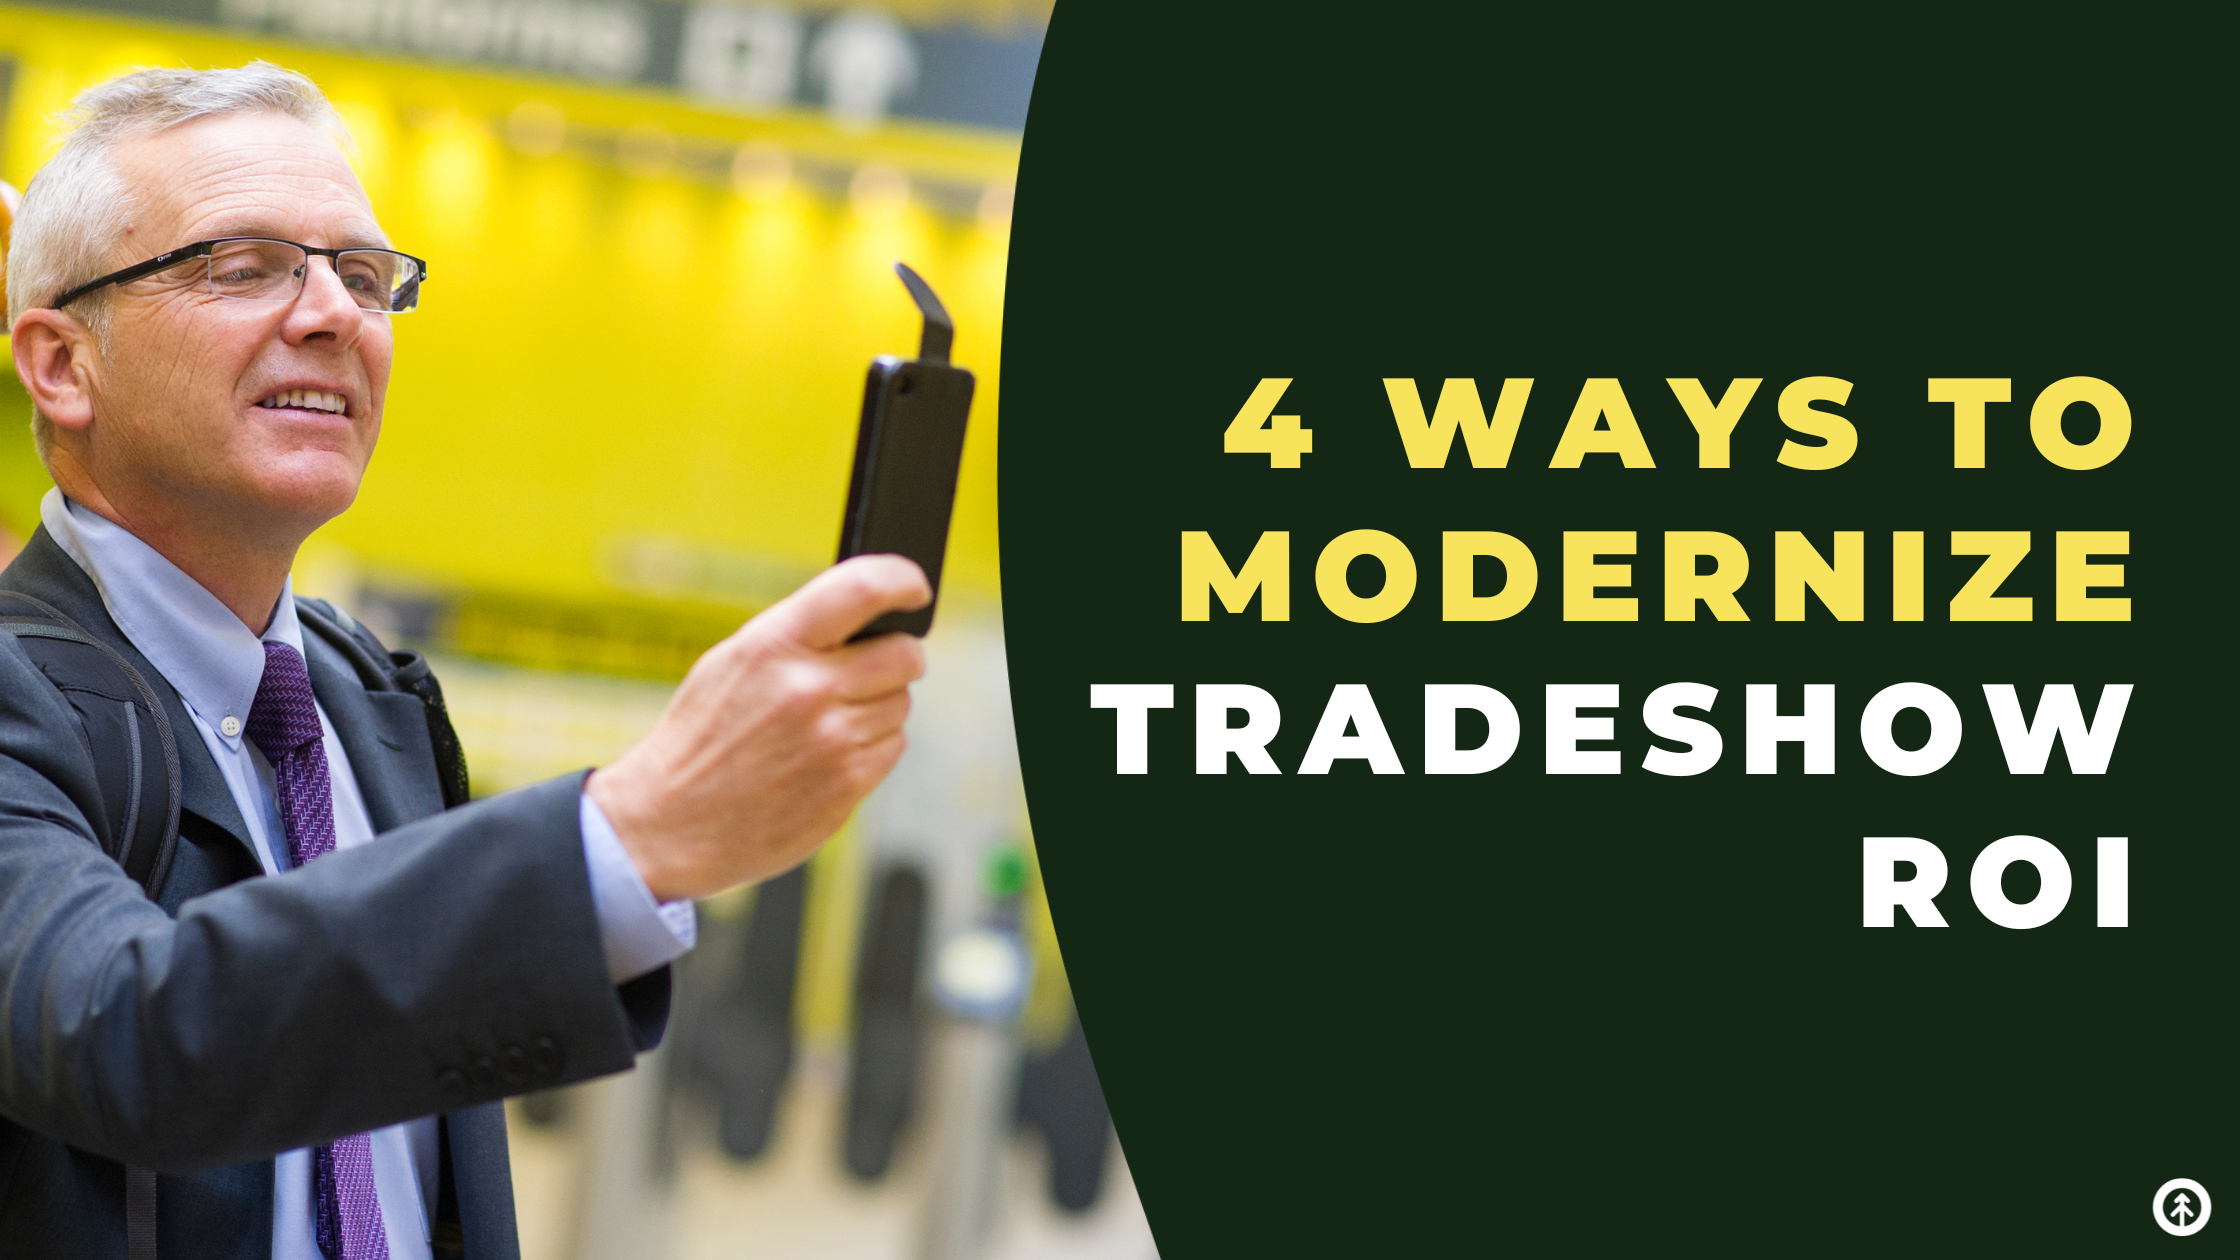 4 Ways to Modernize Tradeshow ROI-featured-image